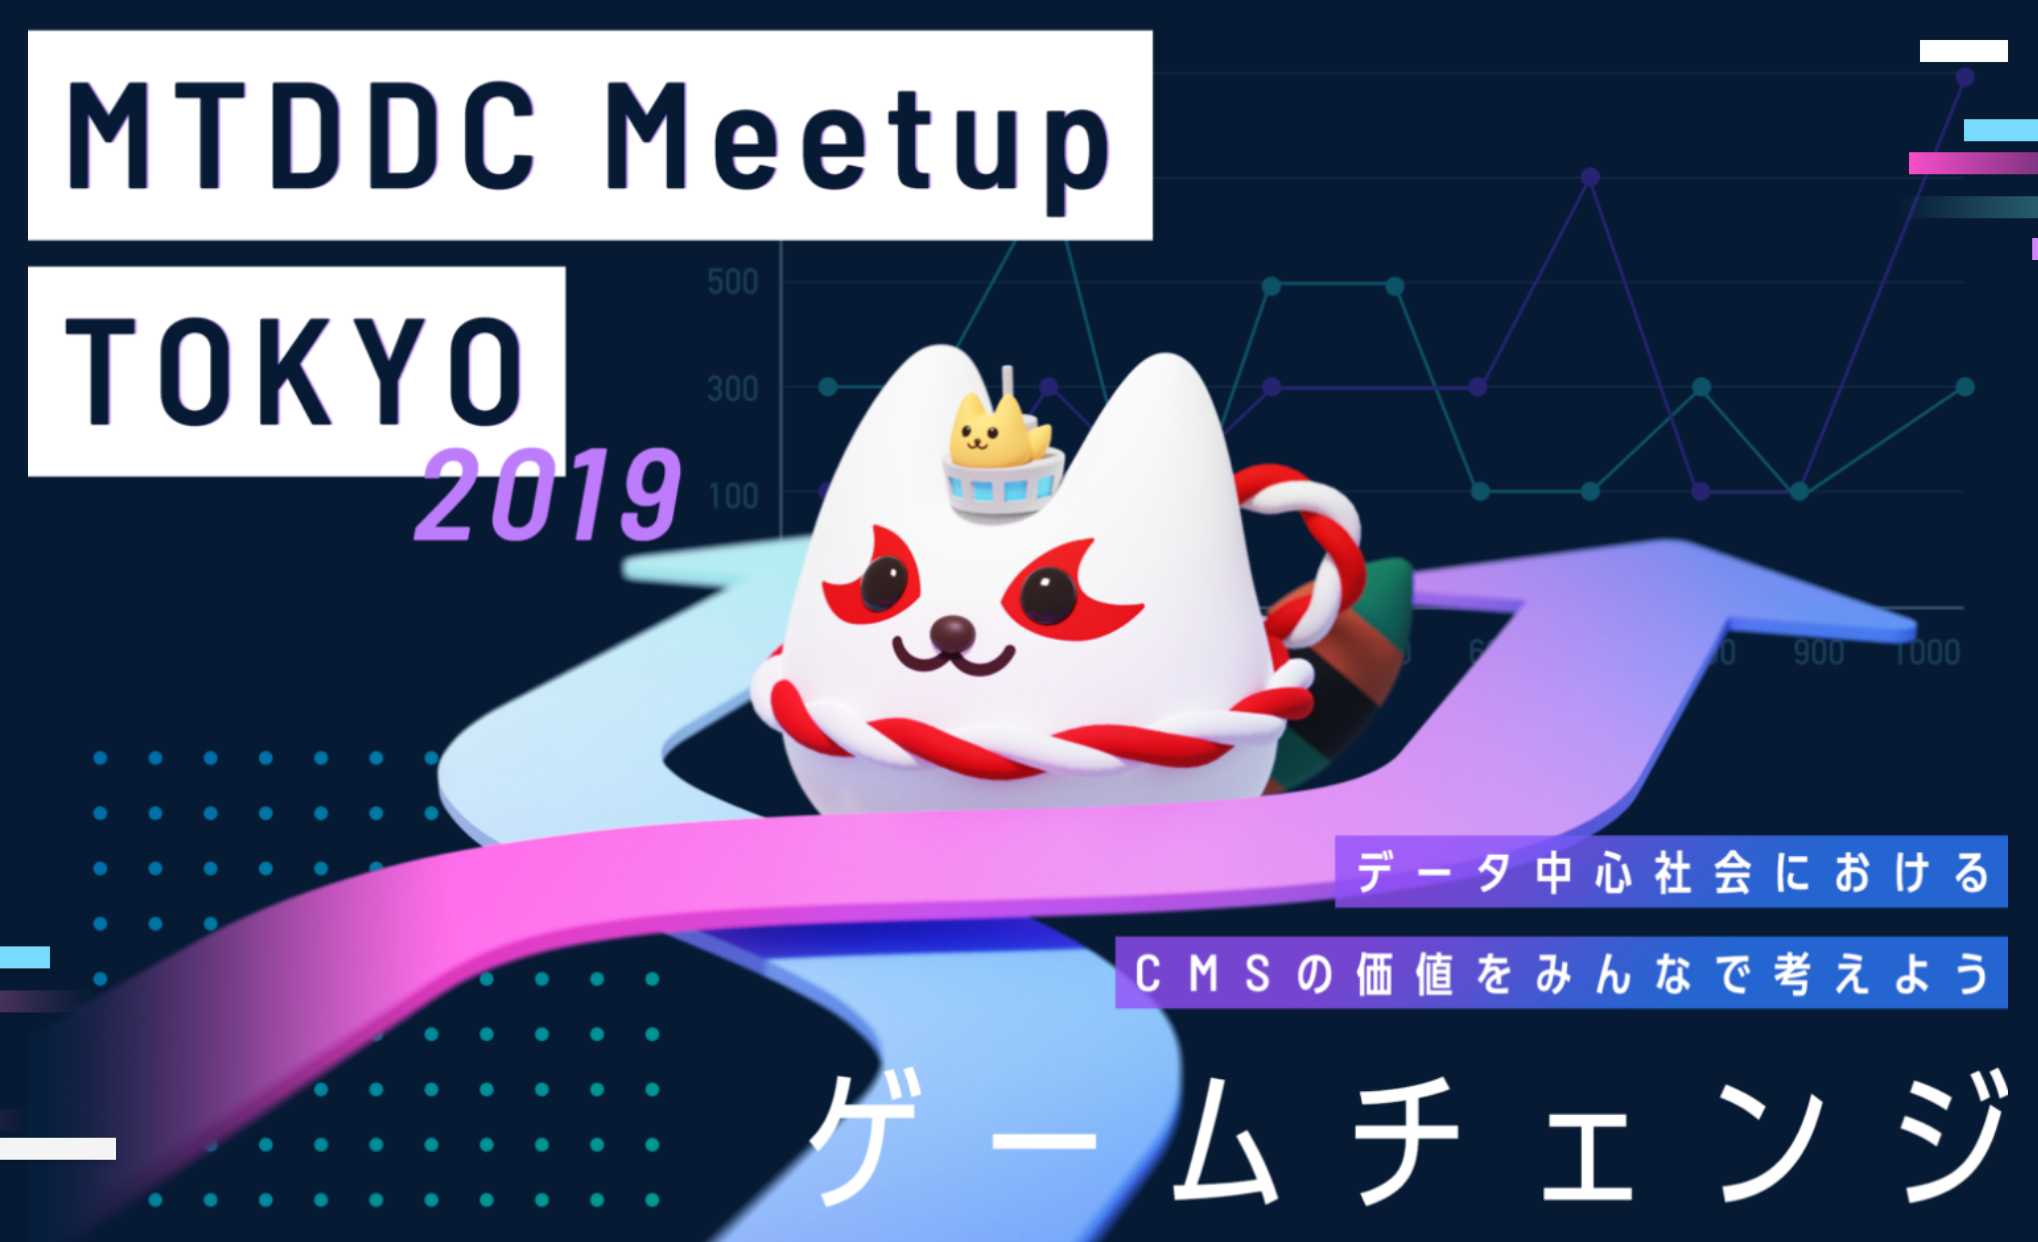 ウェブとAI/IoTで、今できることがわかる! #MTDDC meetup TOKYO 2019 でお待ちしています #週刊SA